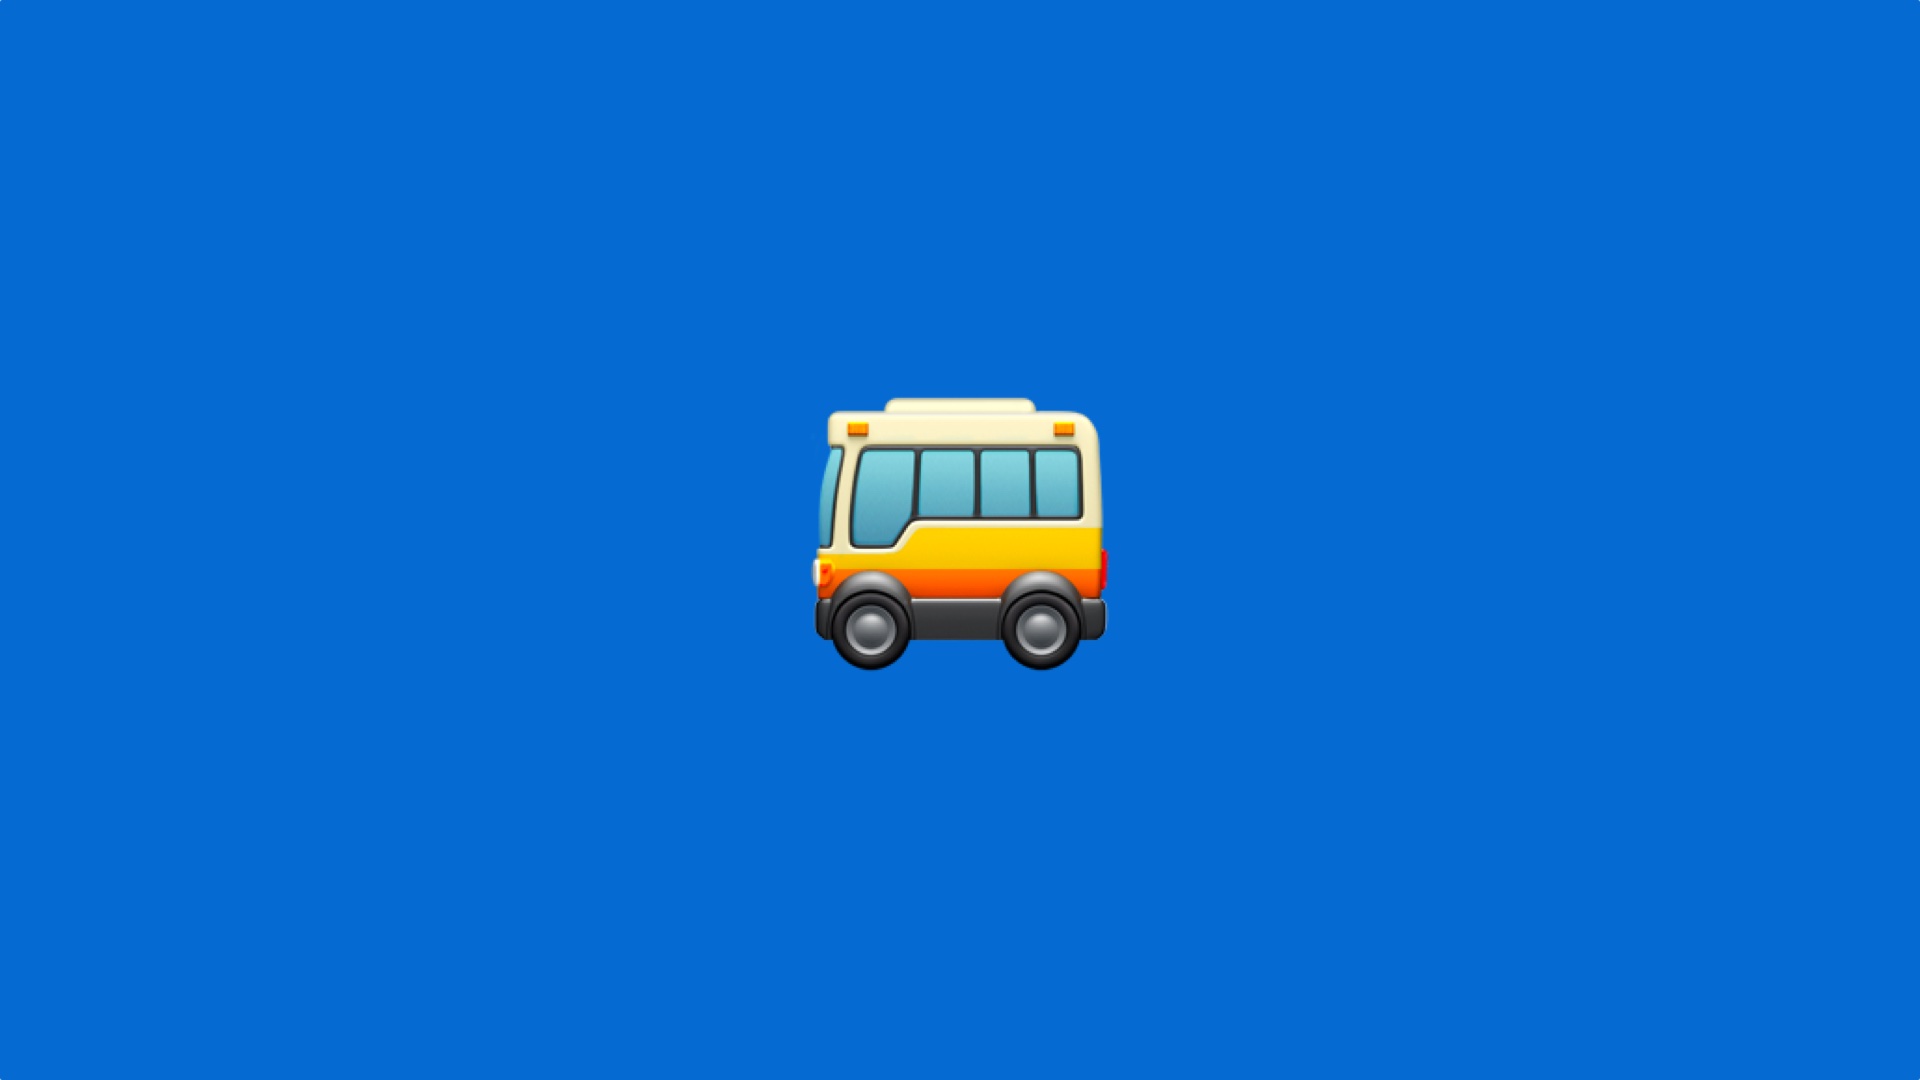 A Bus Emoji